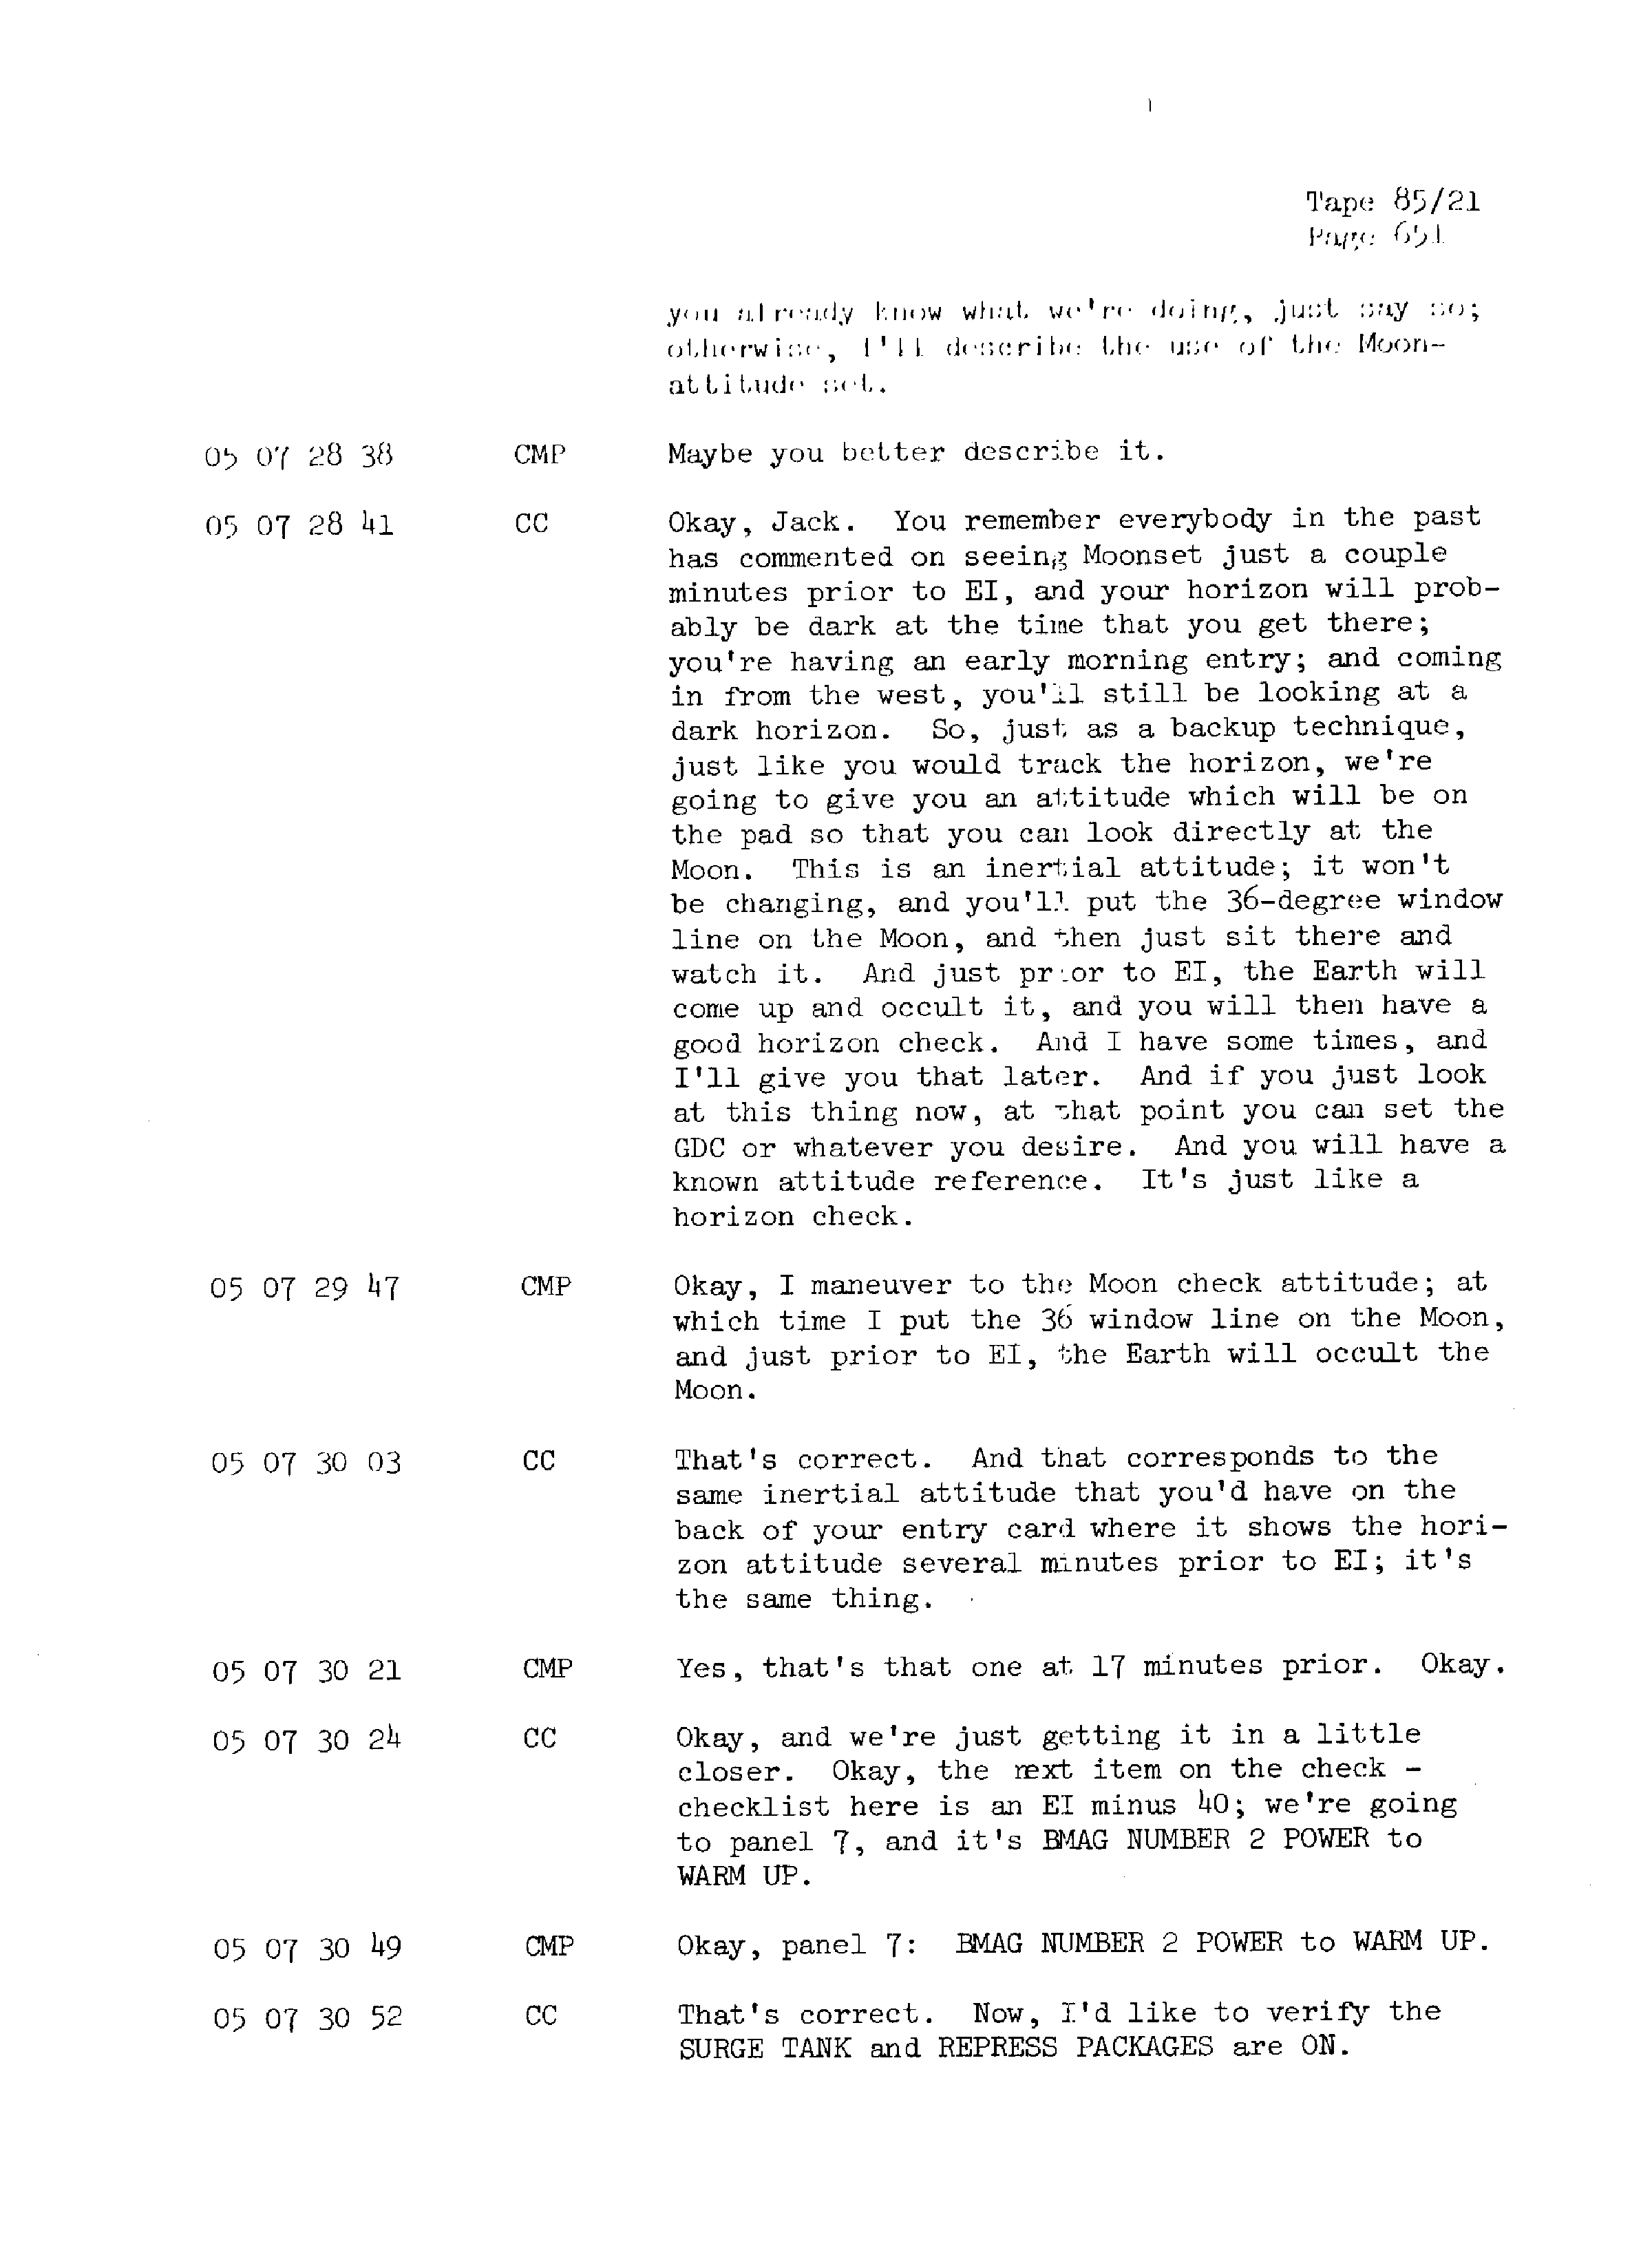 Page 658 of Apollo 13’s original transcript